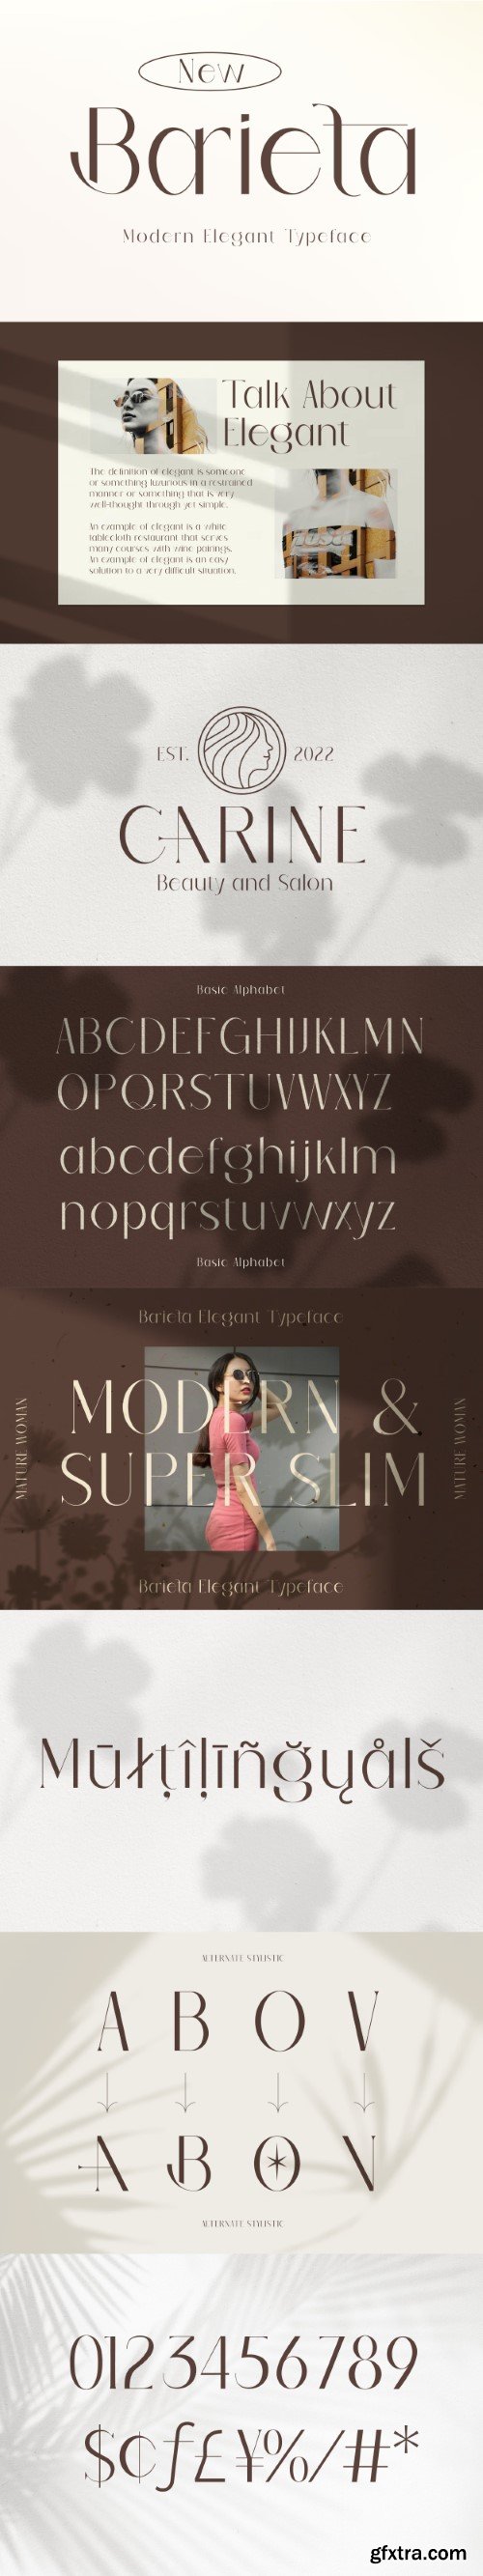 Barieta Elegant Typeface